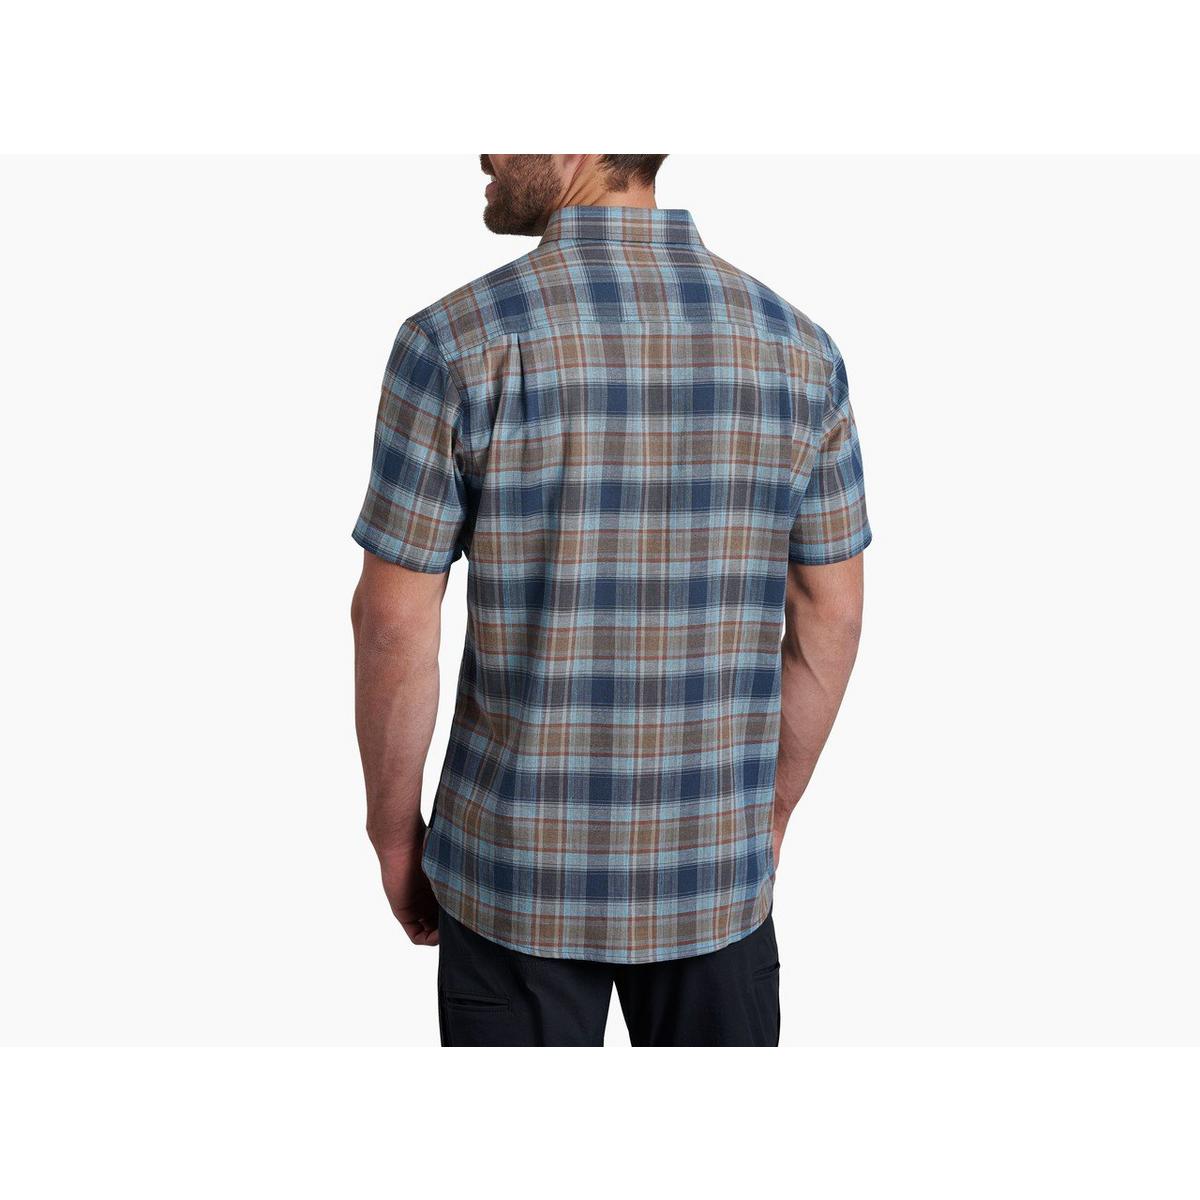 Kuhl Men's Skorpio Short Sleeve Shirt - Mosaic Blue